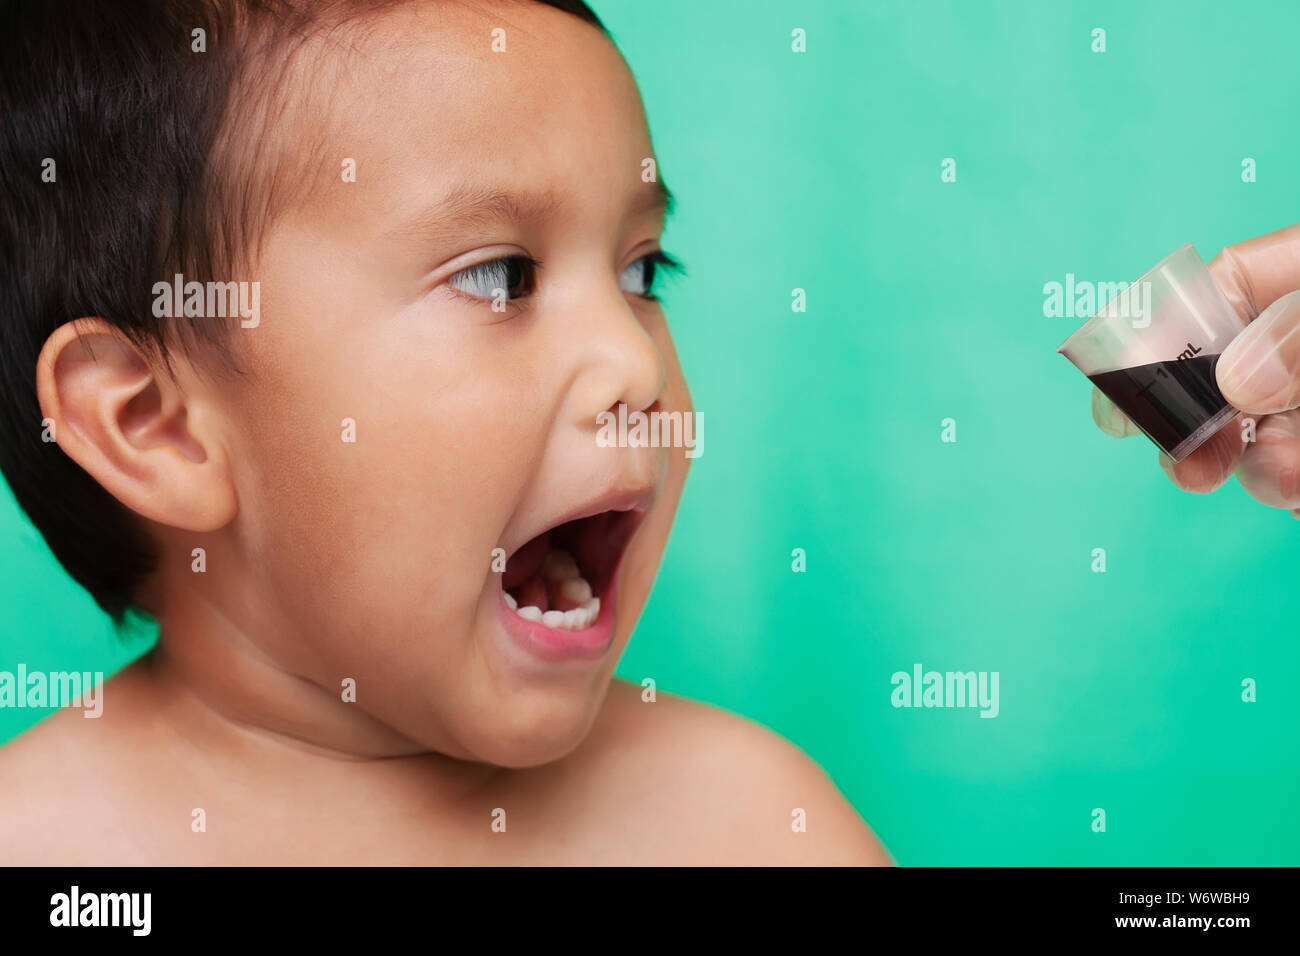 Un petit enfant choqué et hurler à la vue de la médecine dans une coupe donnée par une infirmière. Banque D'Images